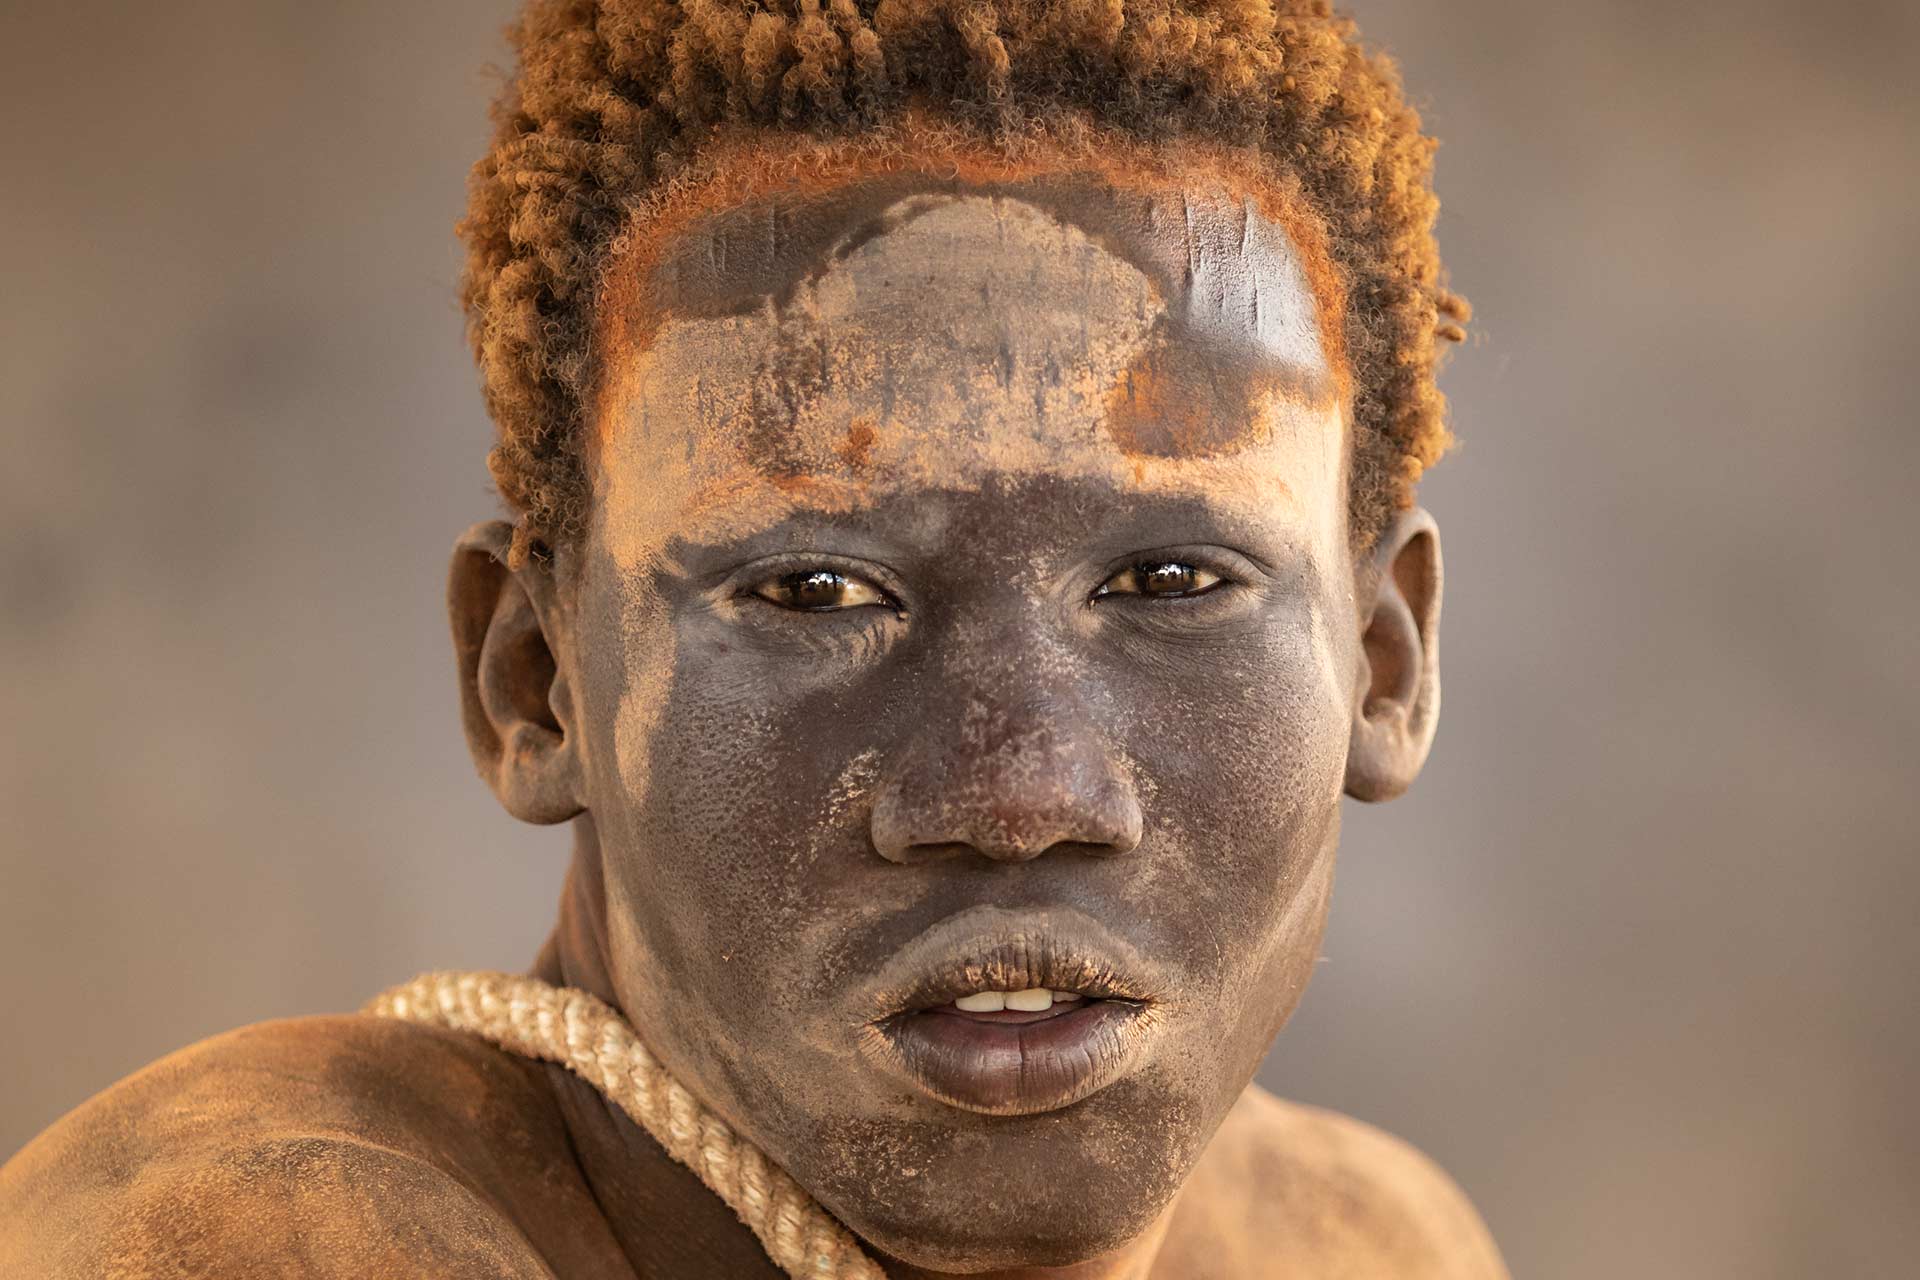 viaje fotografico sudan del sur